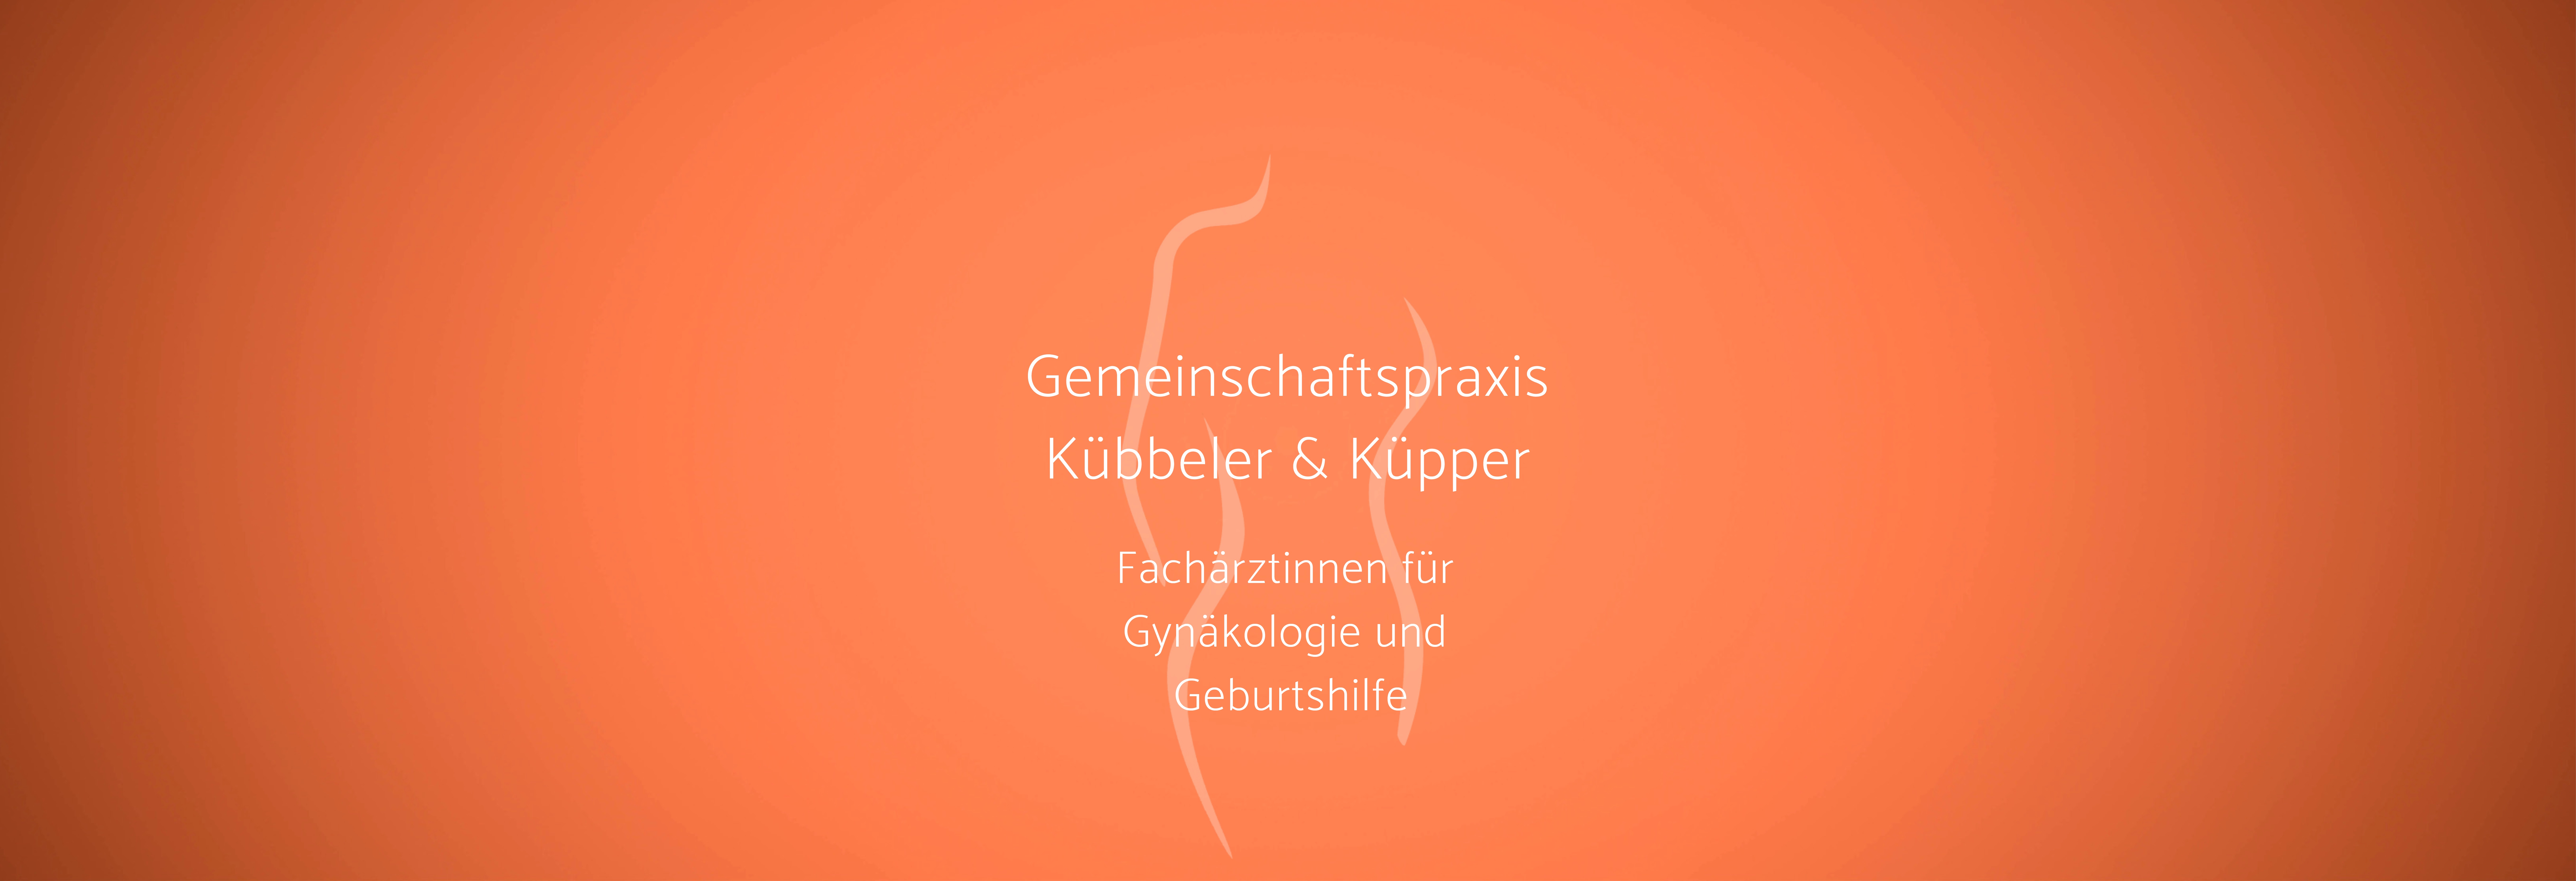 Gemeinschaftspraxis Kübbeler & Küpper